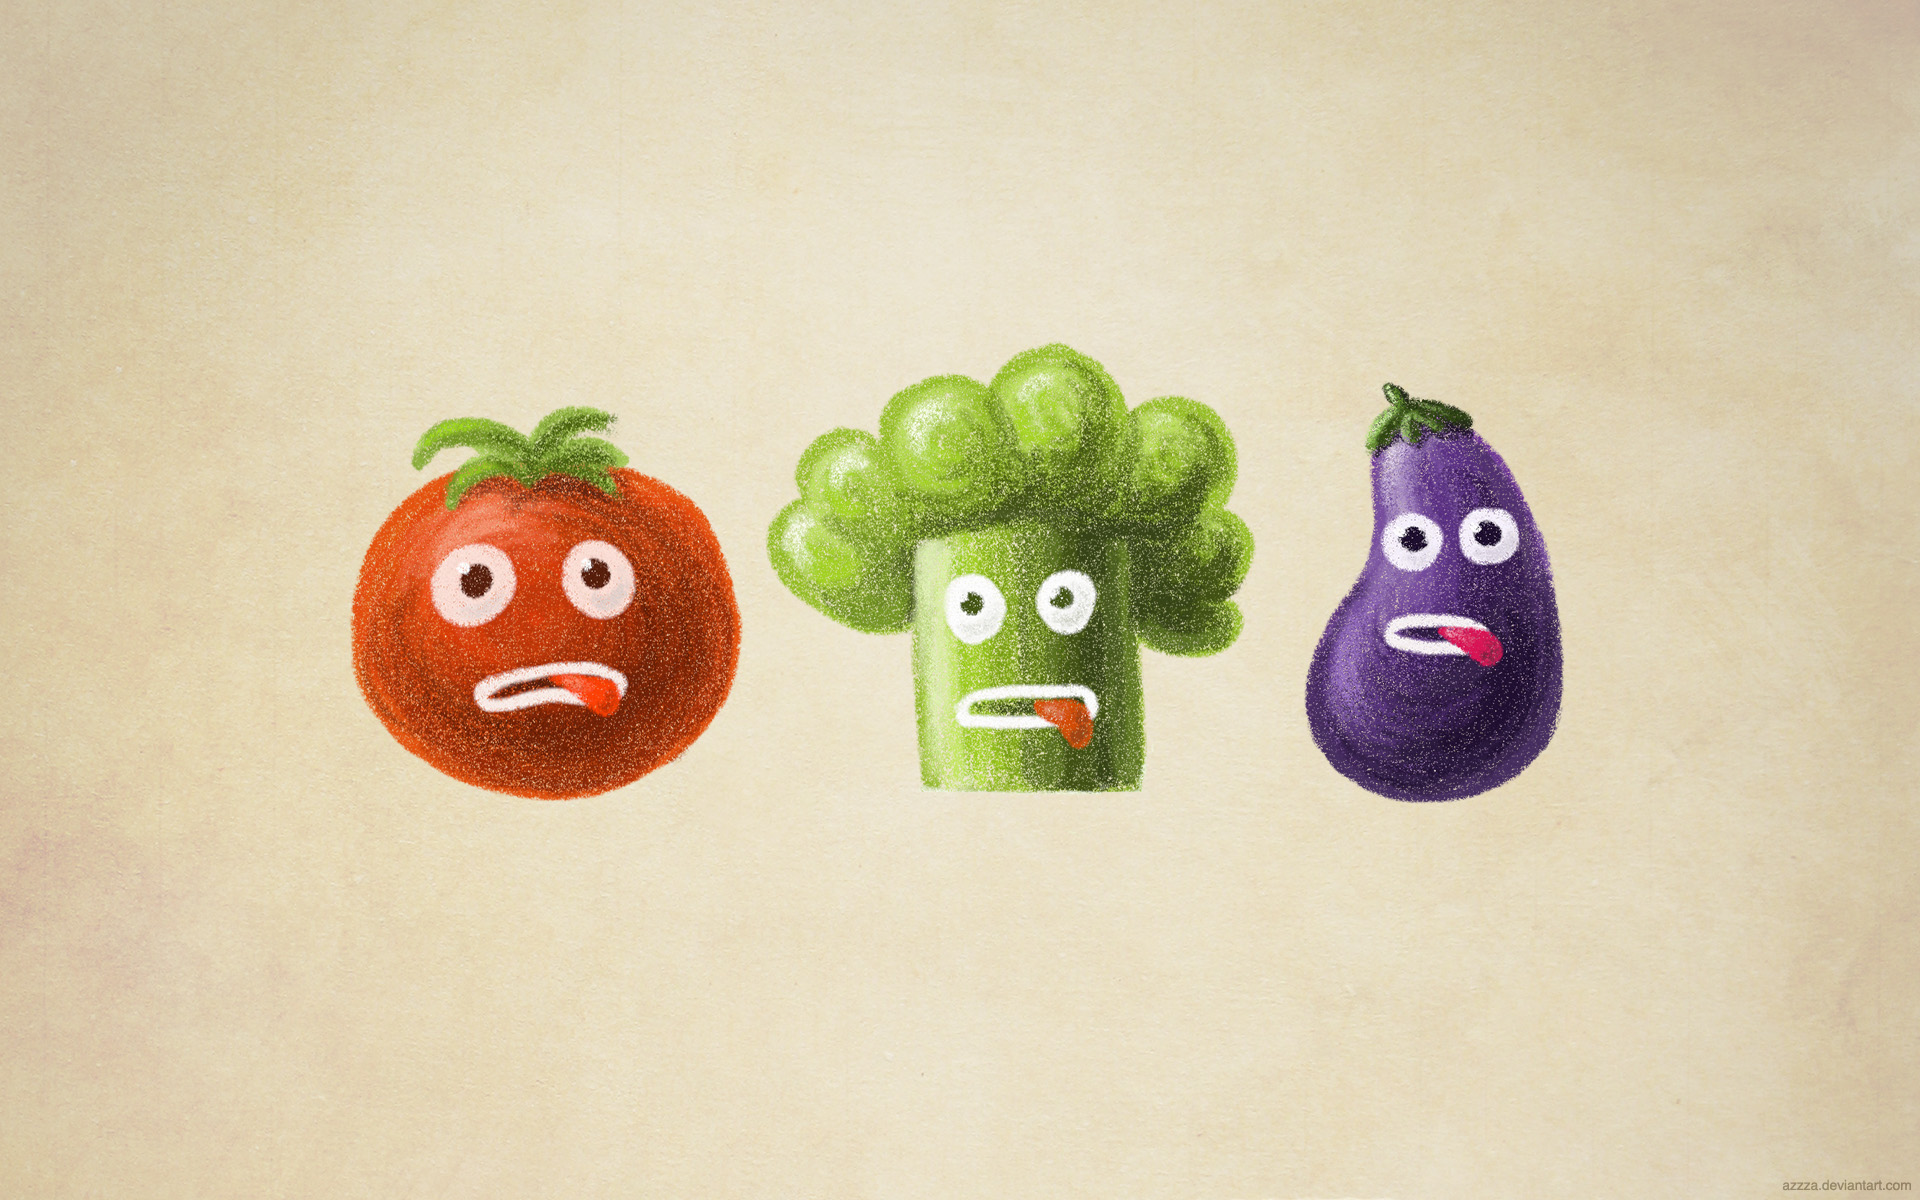 Stressed vegetables